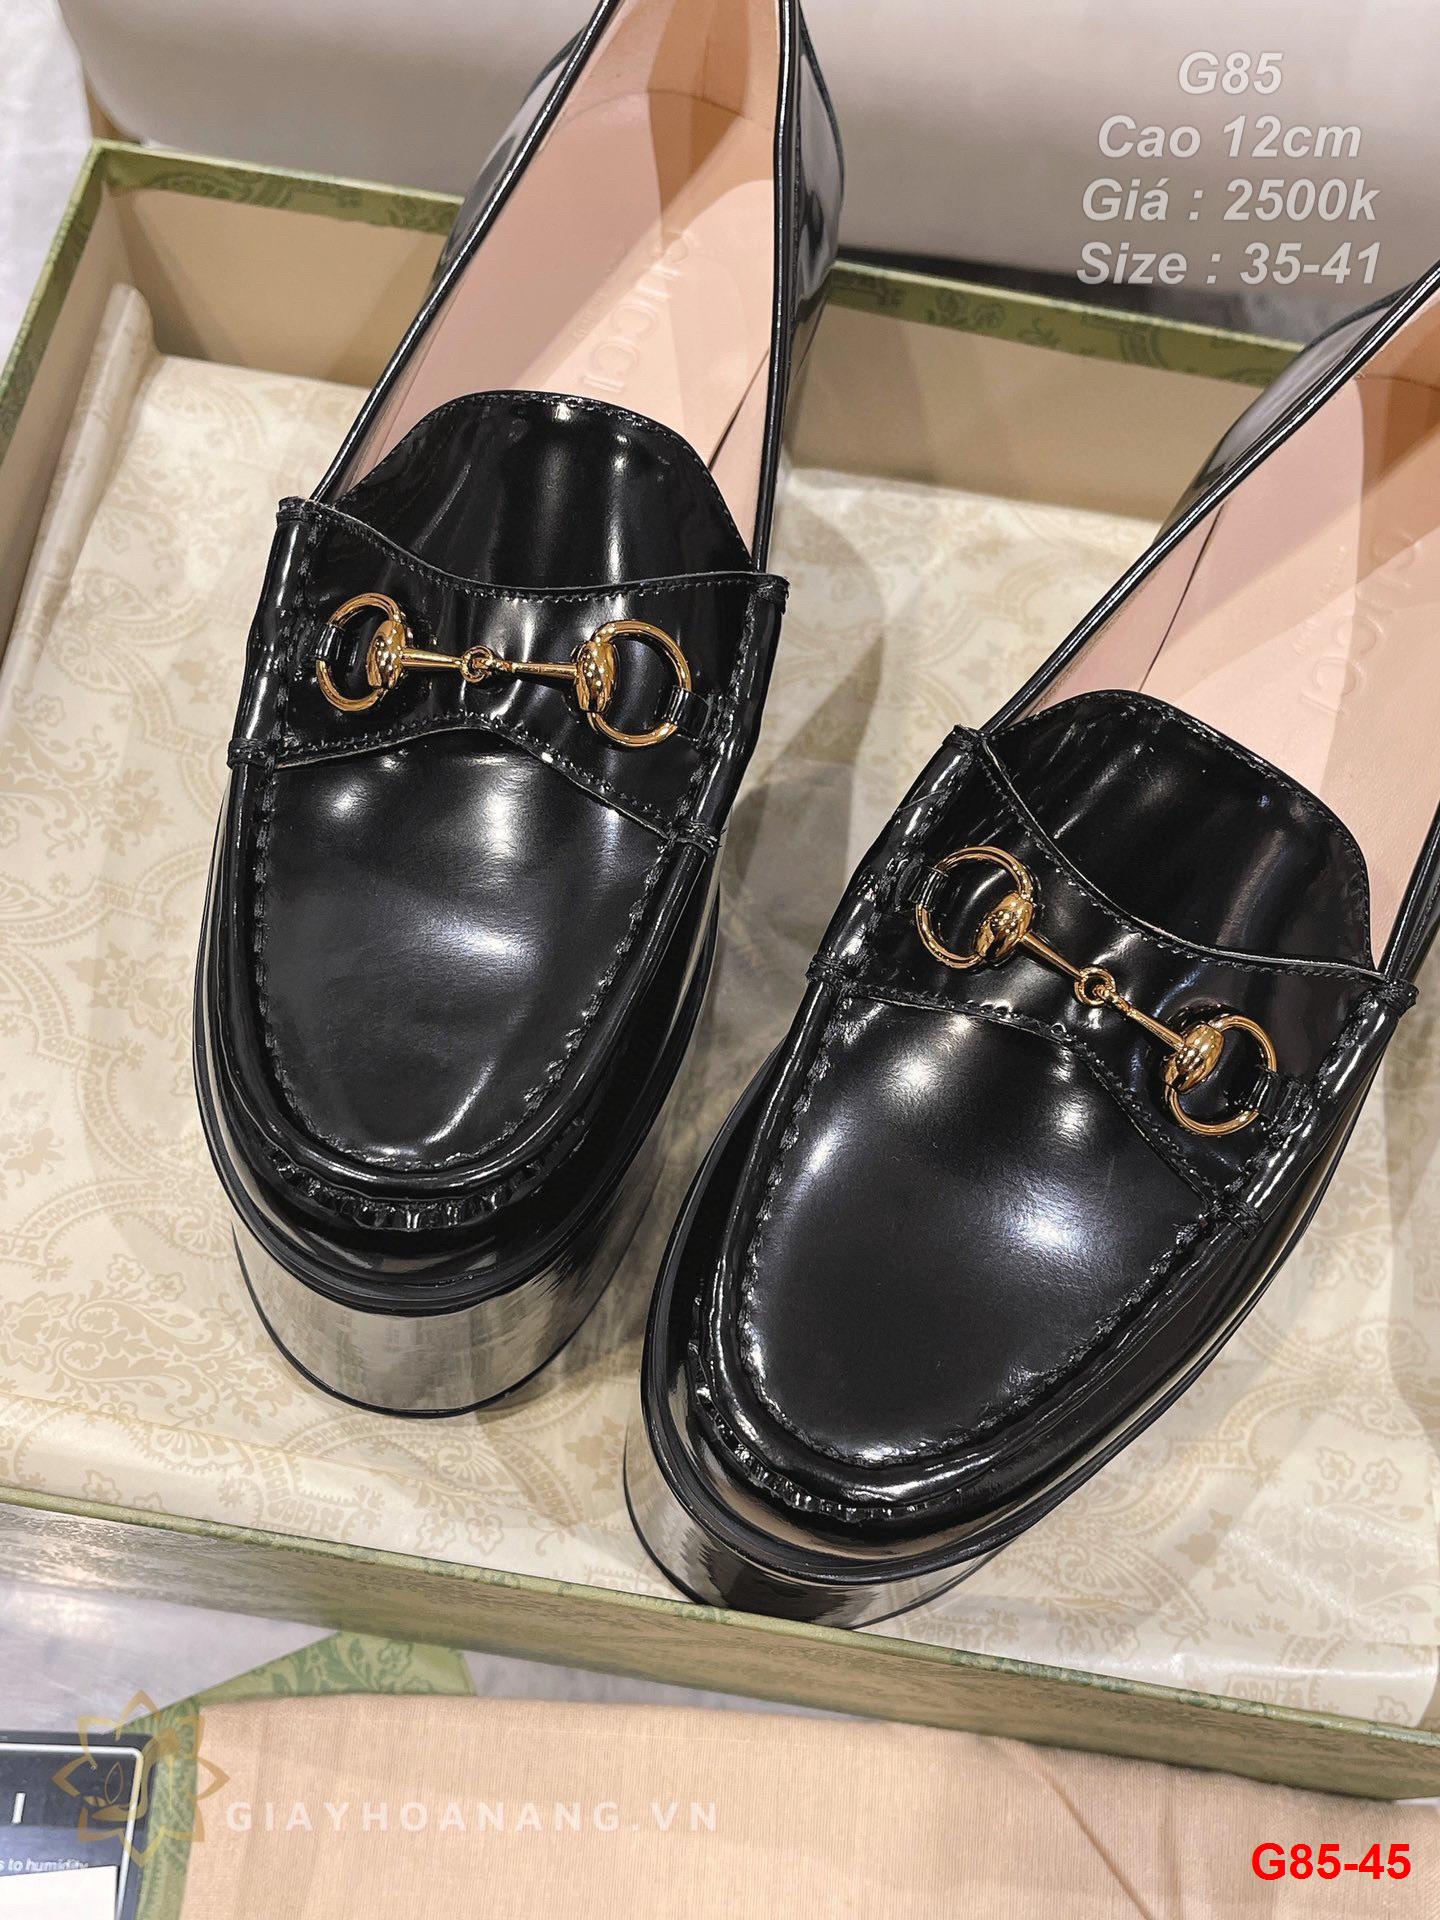 G85-45 Gucci giày cao 12cm siêu cấp